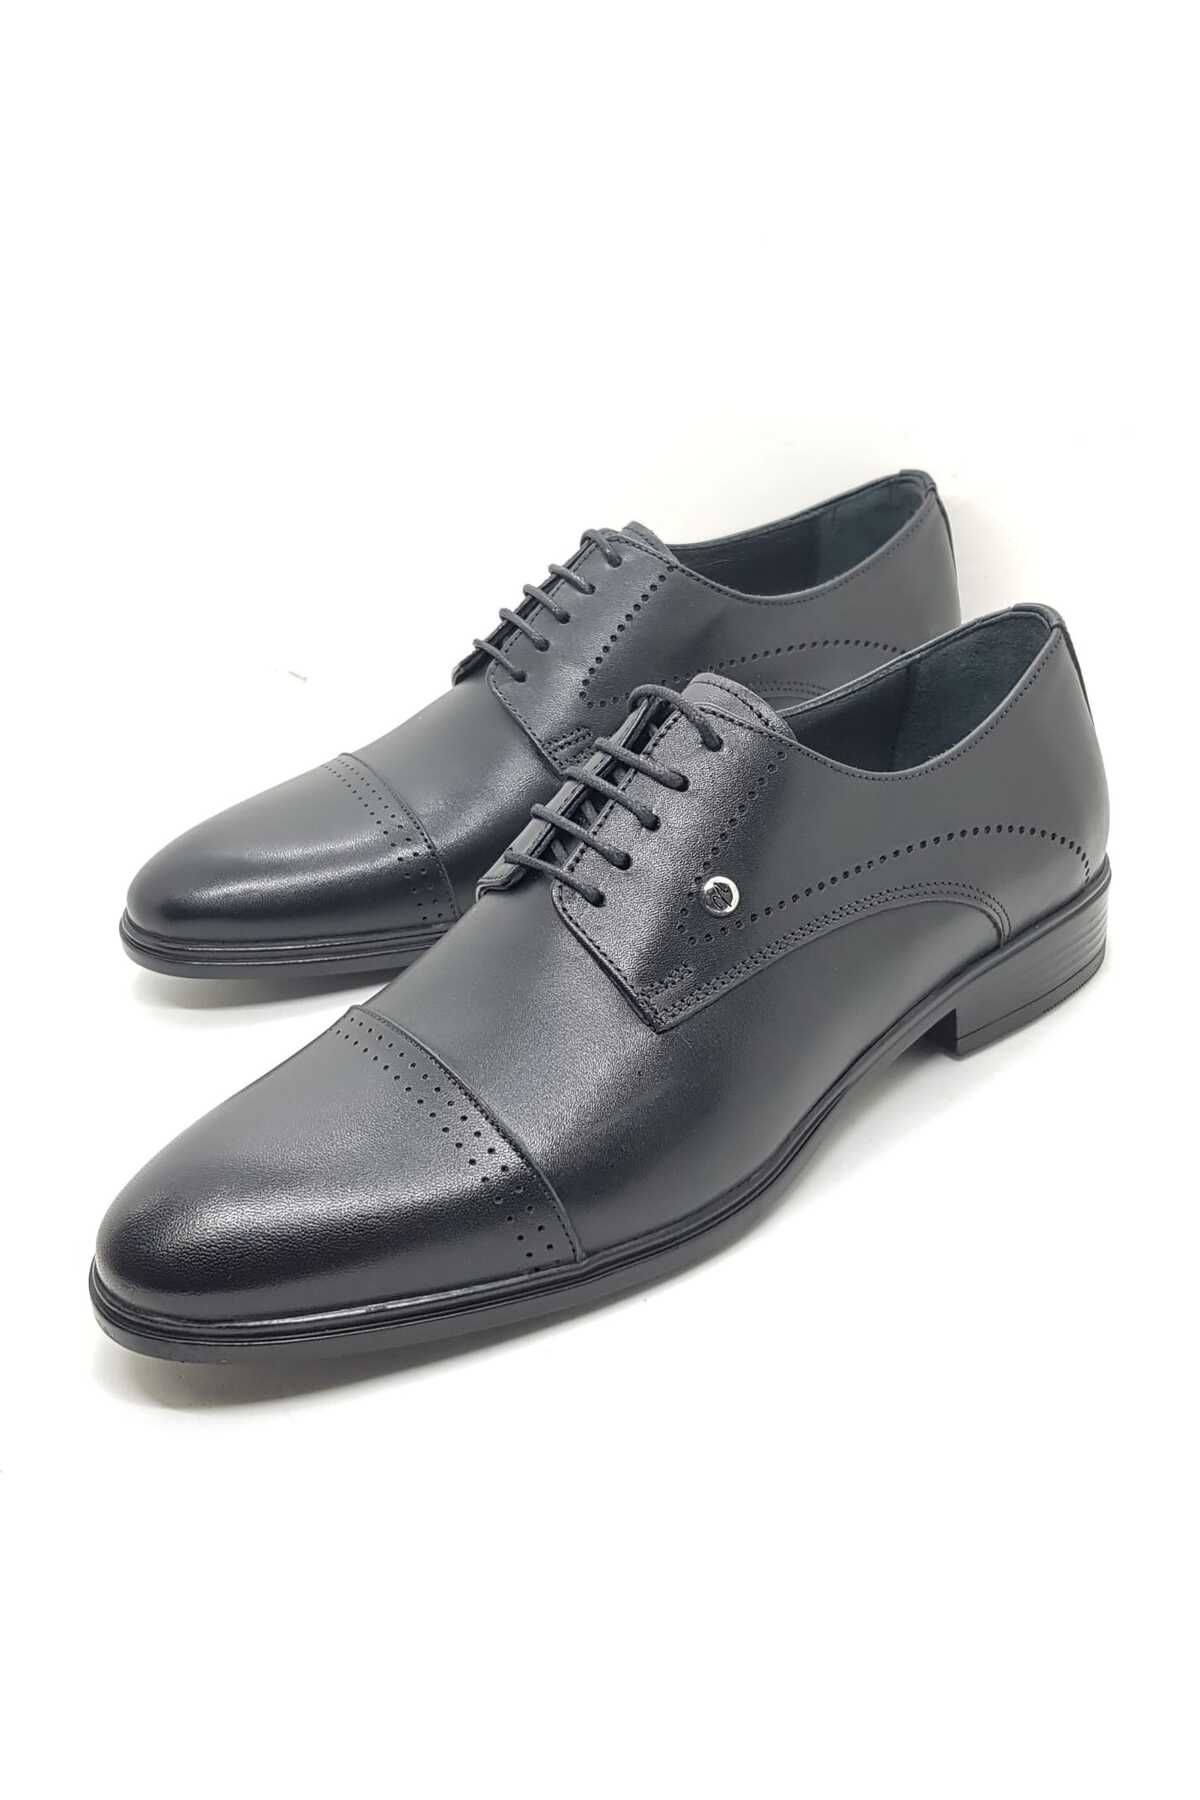 Neco siyah bağcıklı klasik ayakkabı kauçuk taban hakiki deri